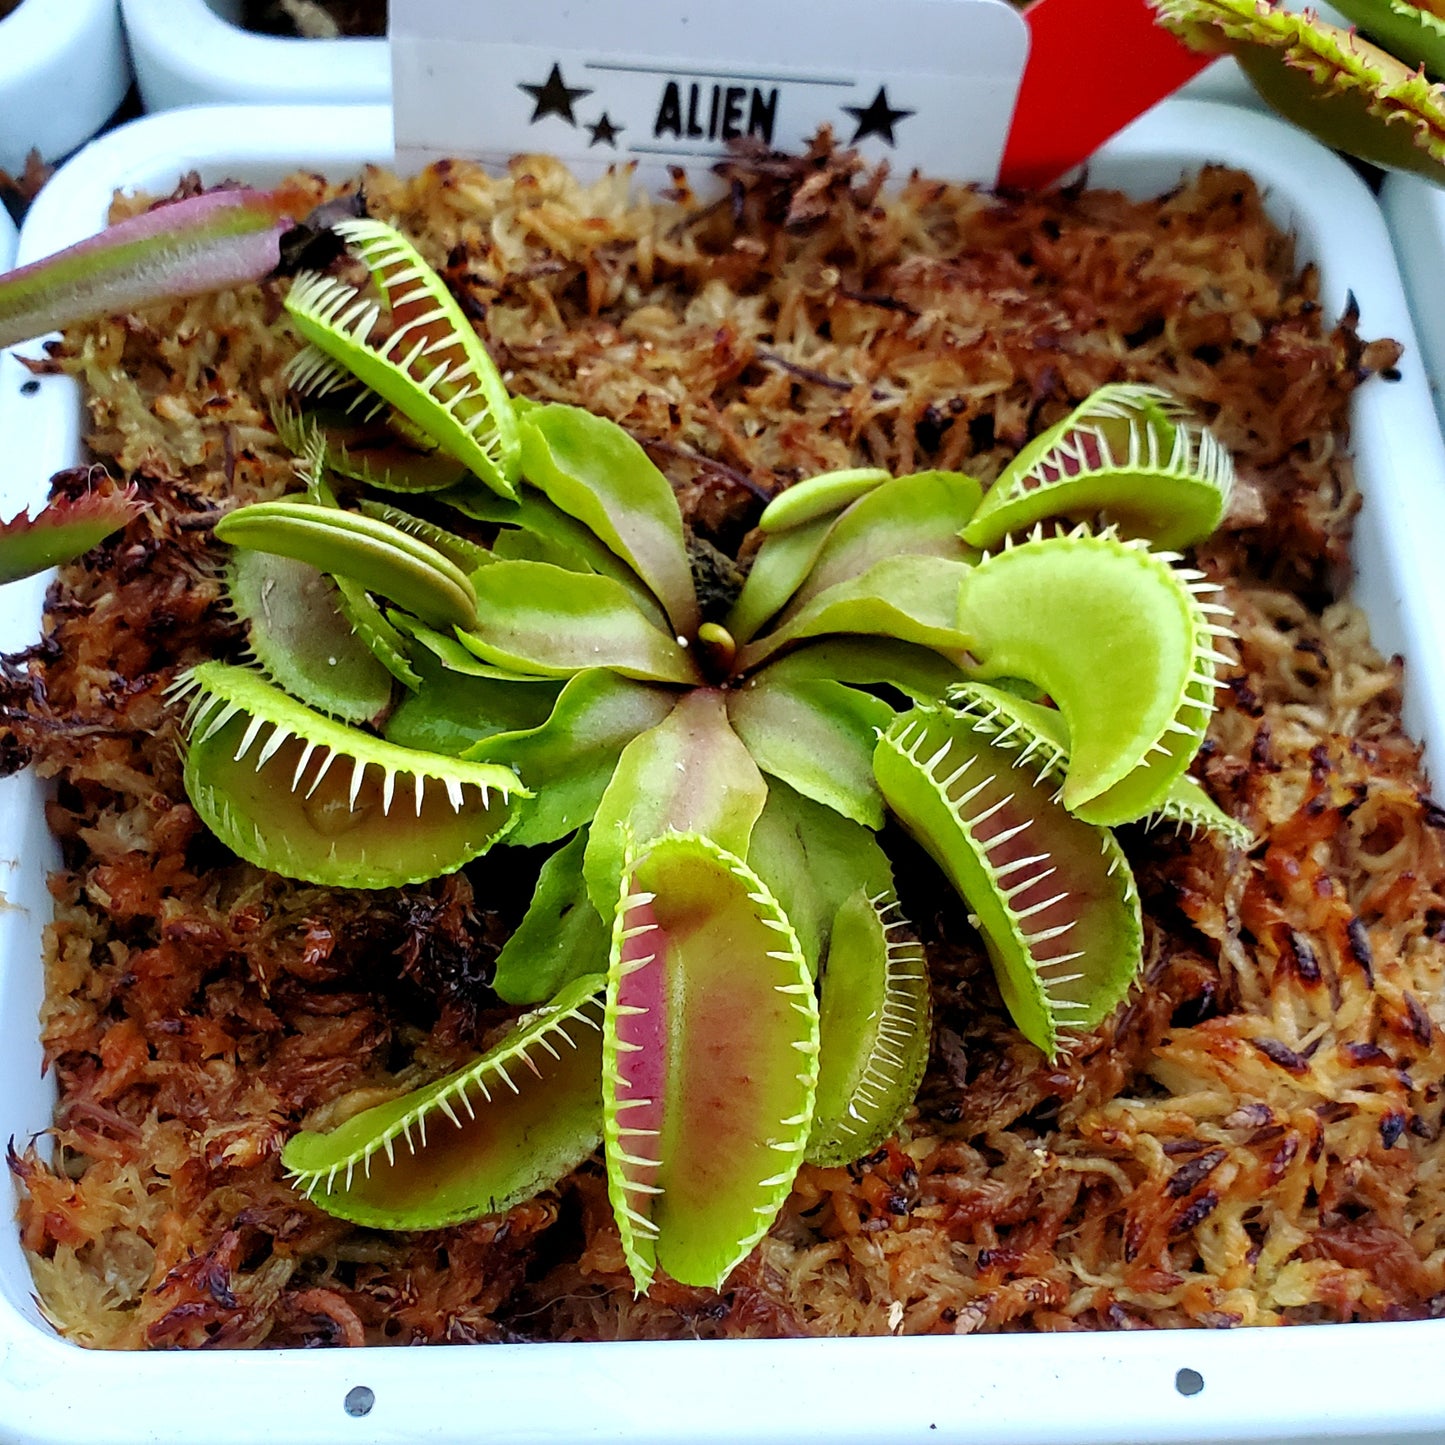 Alien - Venus Flytrap Carnivorous Plant